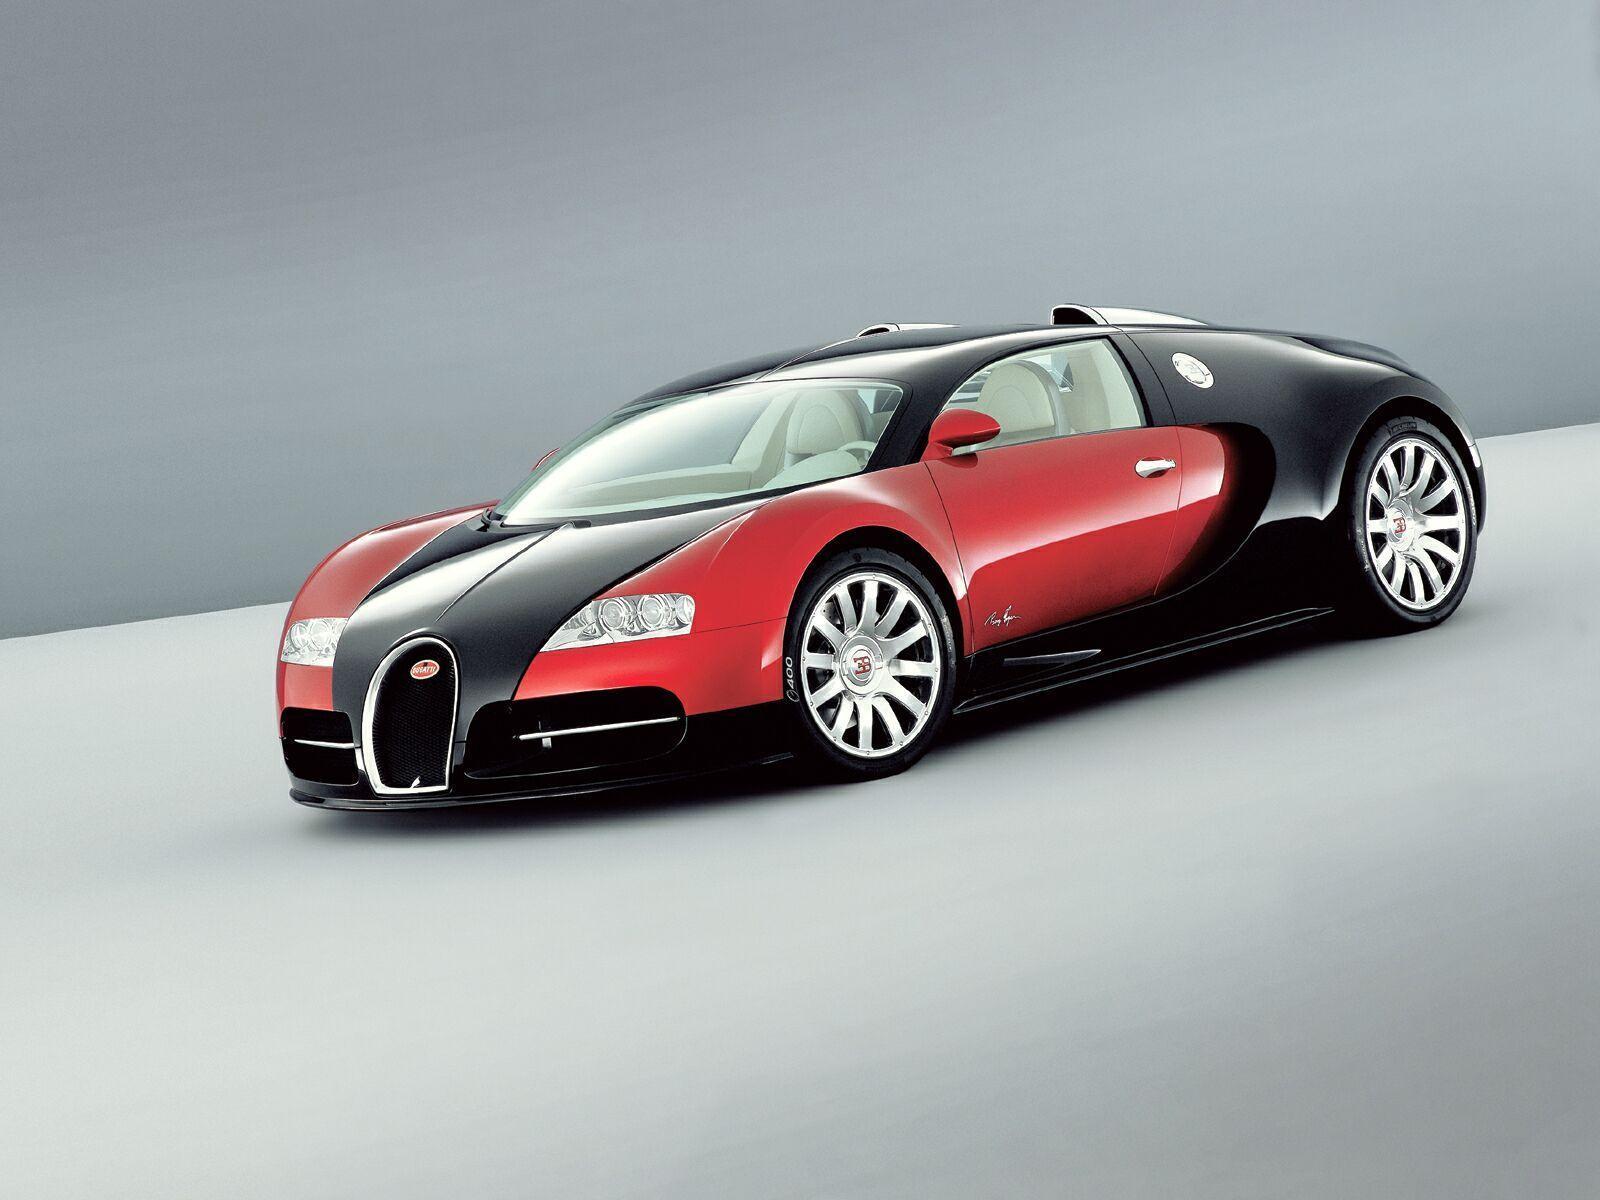 Outstanding Bugatti Picture and Wallpaper